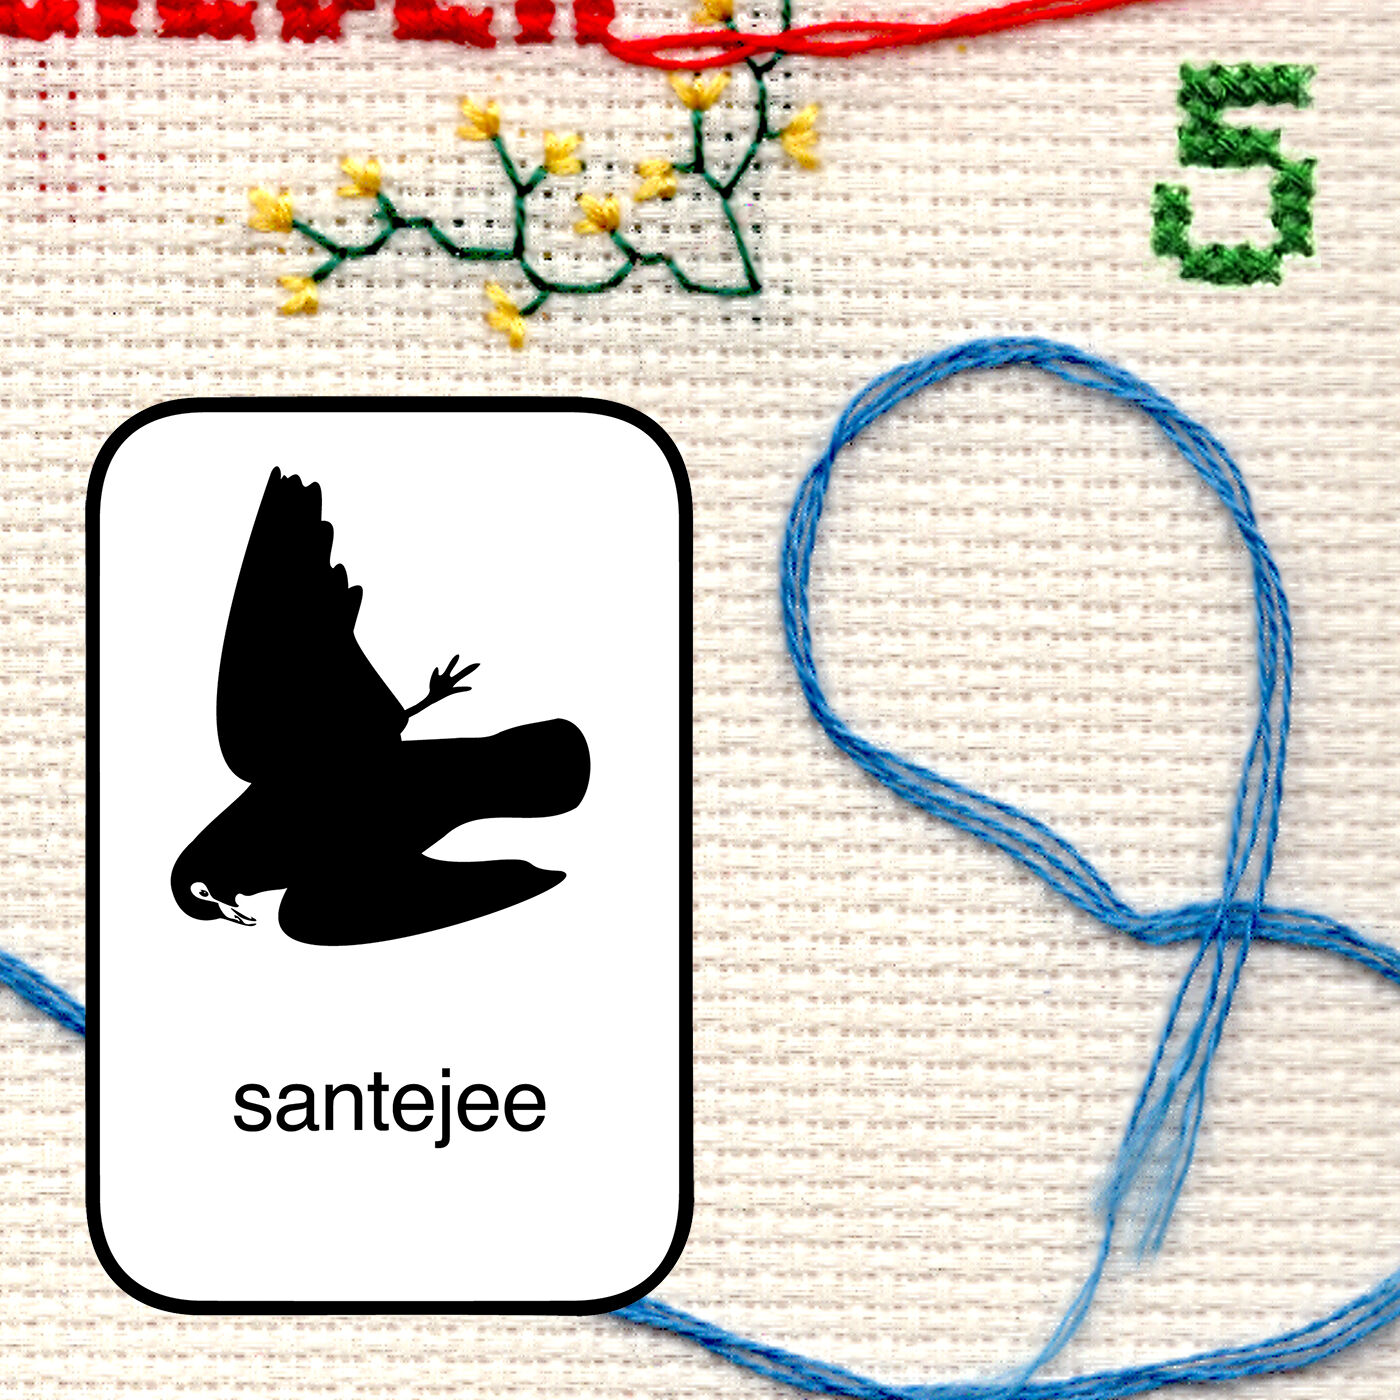 #5 - Santejee